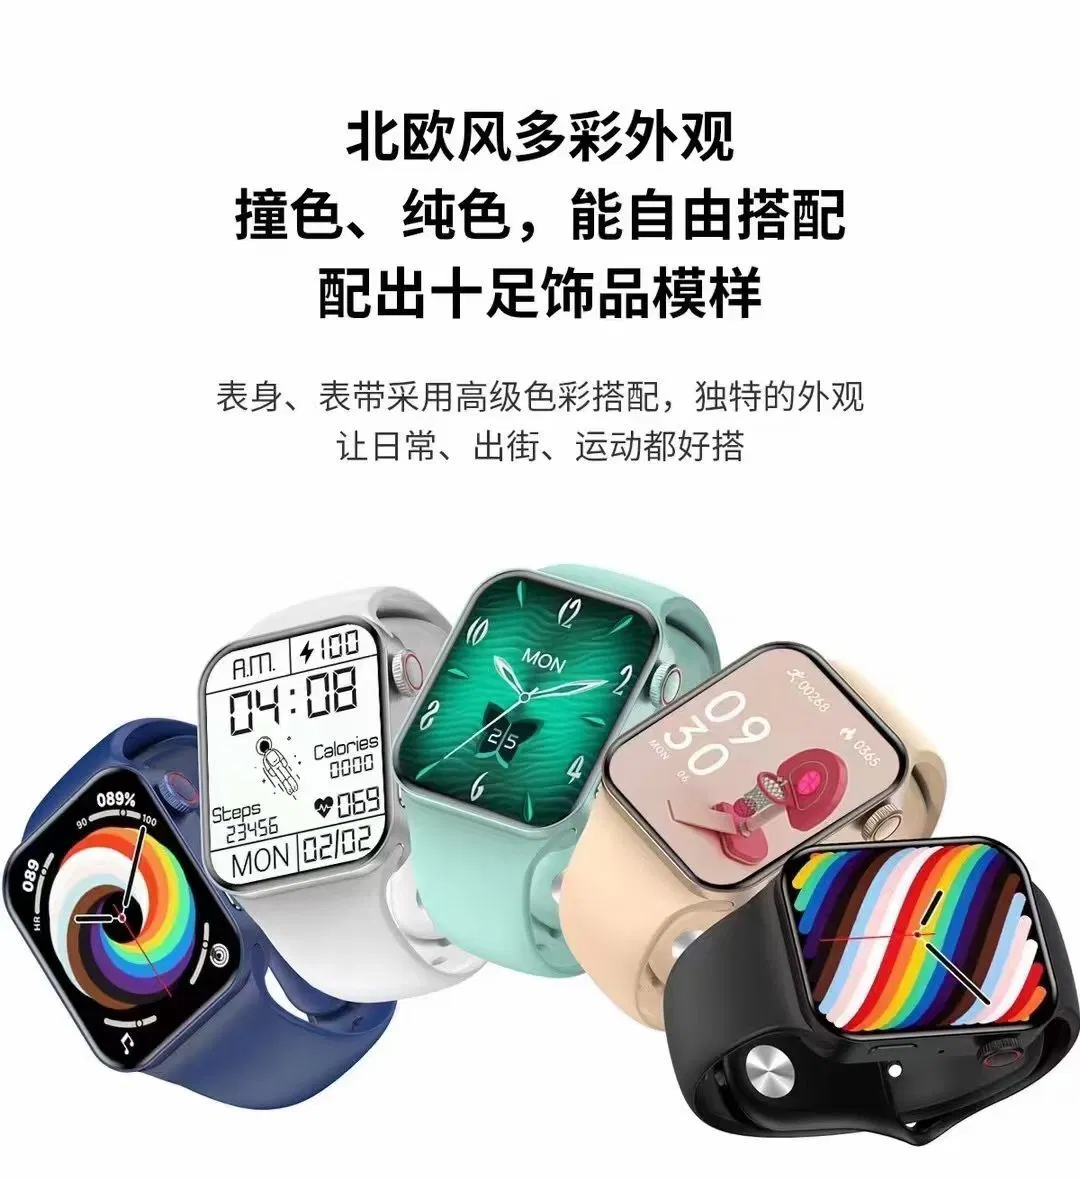 Usine Hotselling de gros de produits de santé étanche Smartwatch